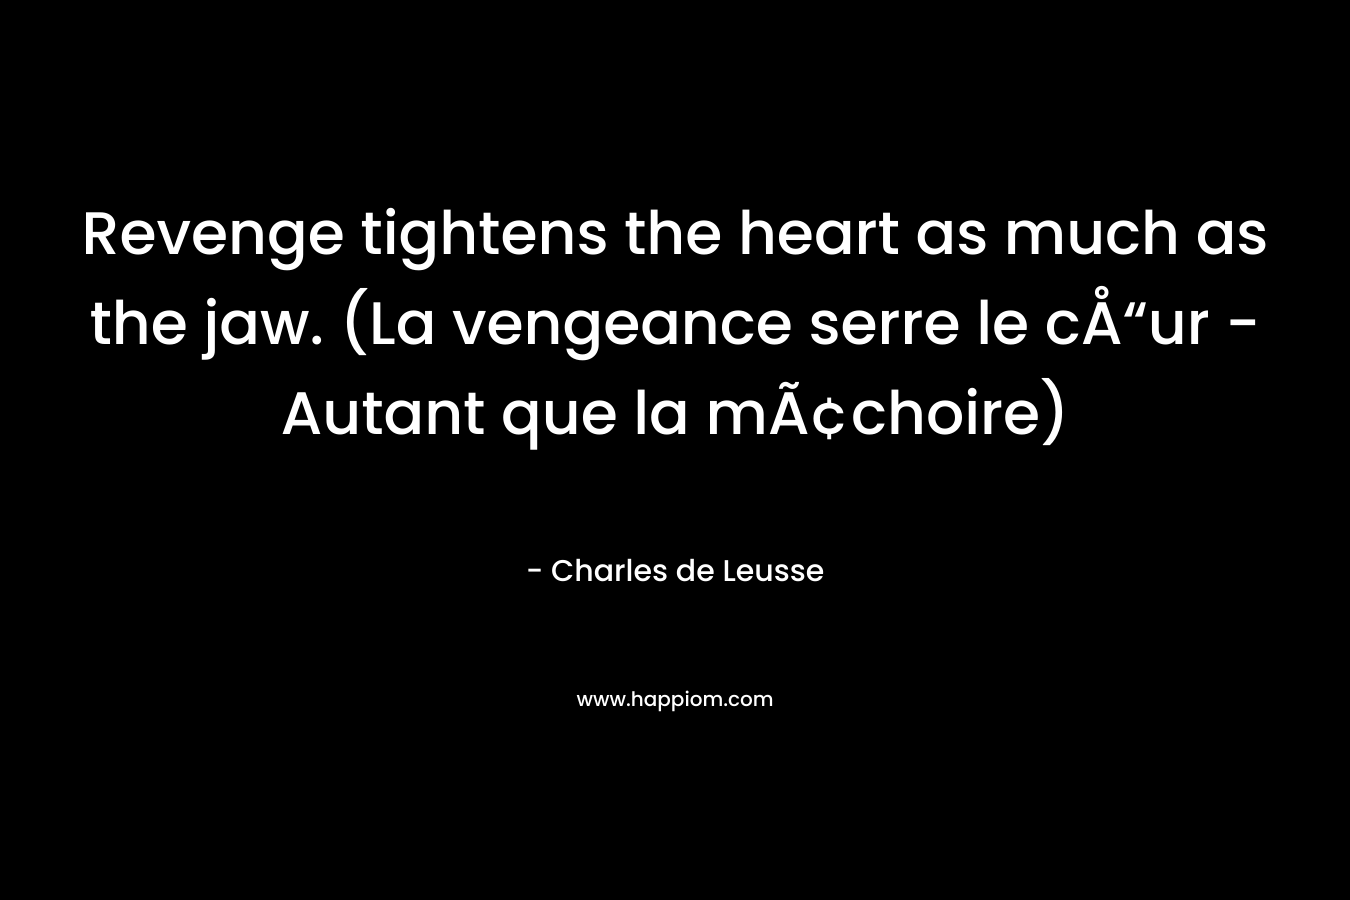 Revenge tightens the heart as much as the jaw. (La vengeance serre le cÅ“ur - Autant que la mÃ¢choire)